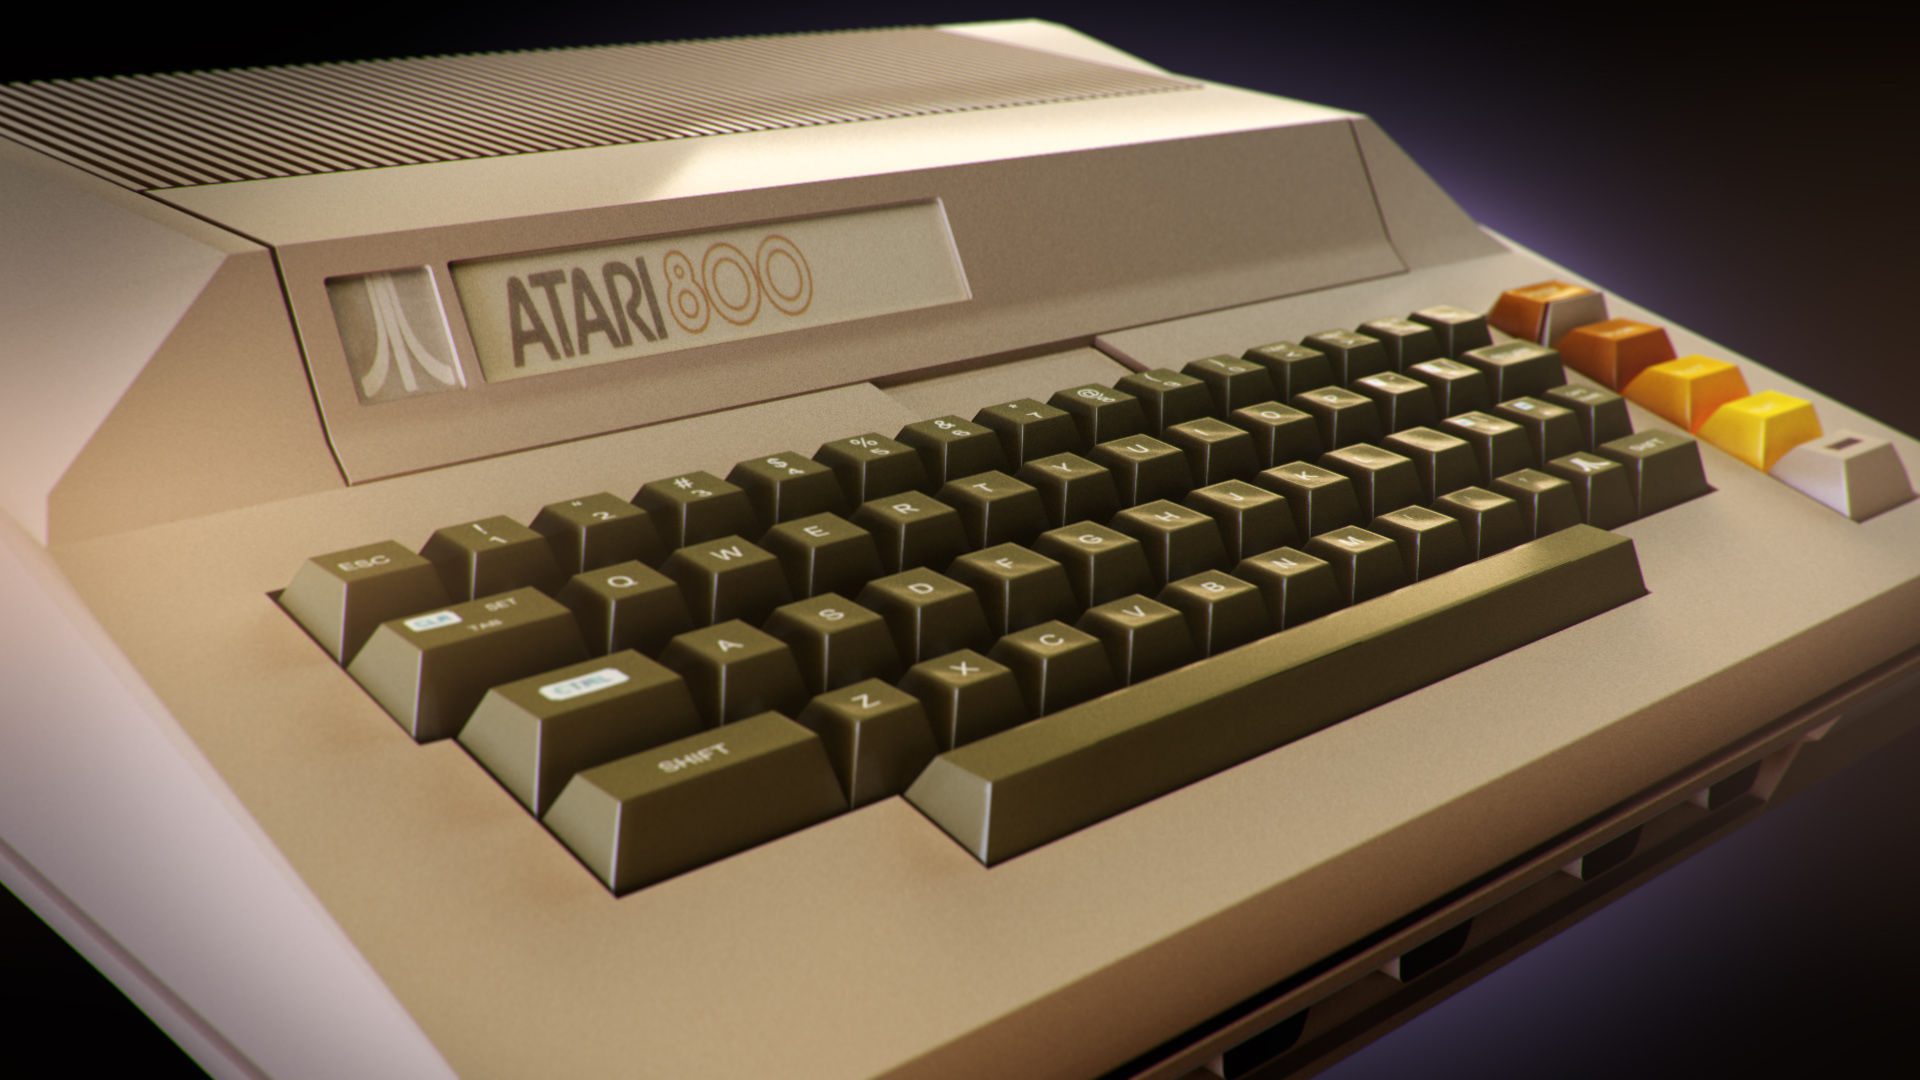 Atari 8-bit Computer Favorites – GXG Live